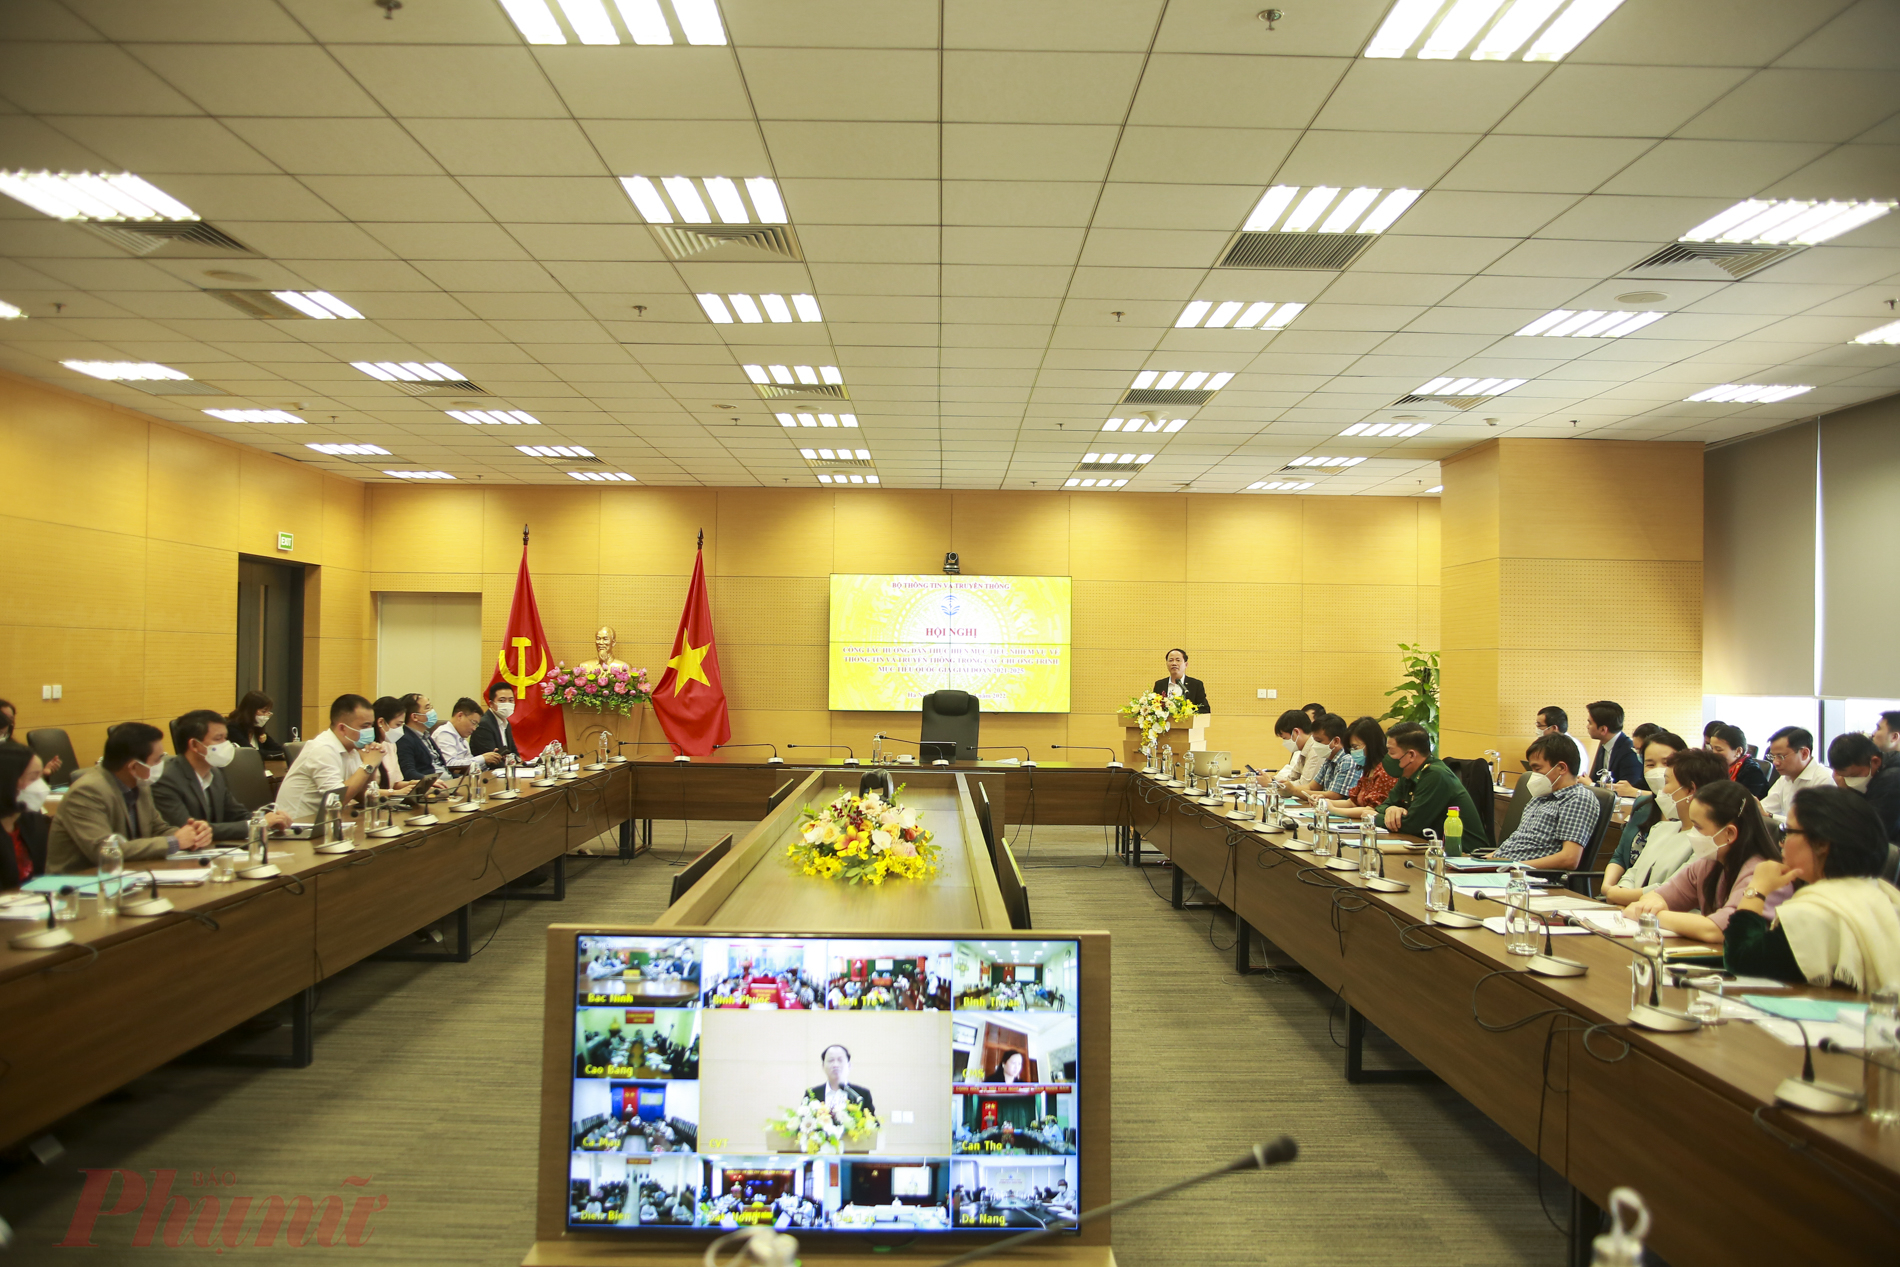 Hội nghị được tổ chức trực tuyến tại Bộ TT&TT với điểm cầu các địa phương trong cả nước. Thứ trưởng Bộ TT&TT Phạm Anh Tuấn chủ trì hội nghị.